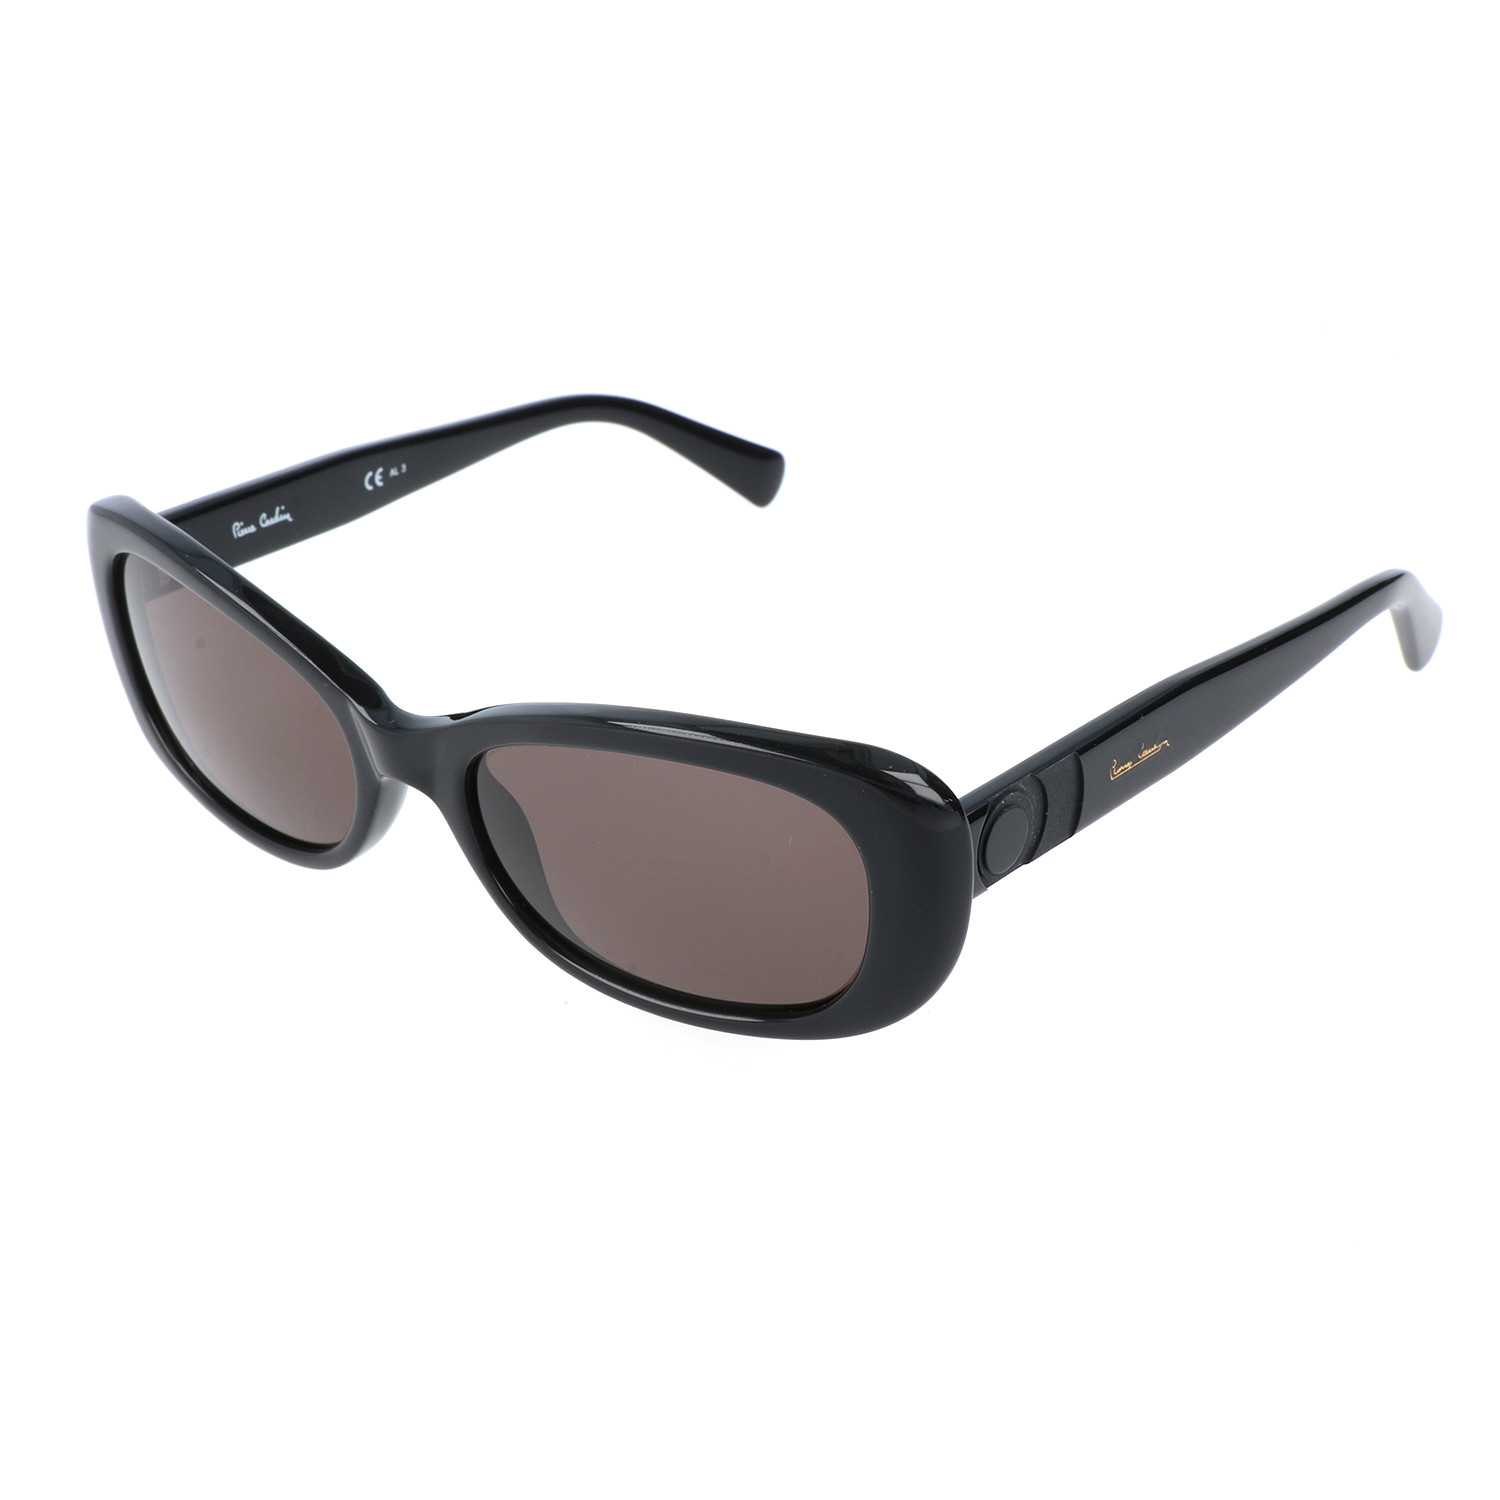 Pierre Cardin Women's Sunglasses // 8374 // Black - Pierre Cardin ...